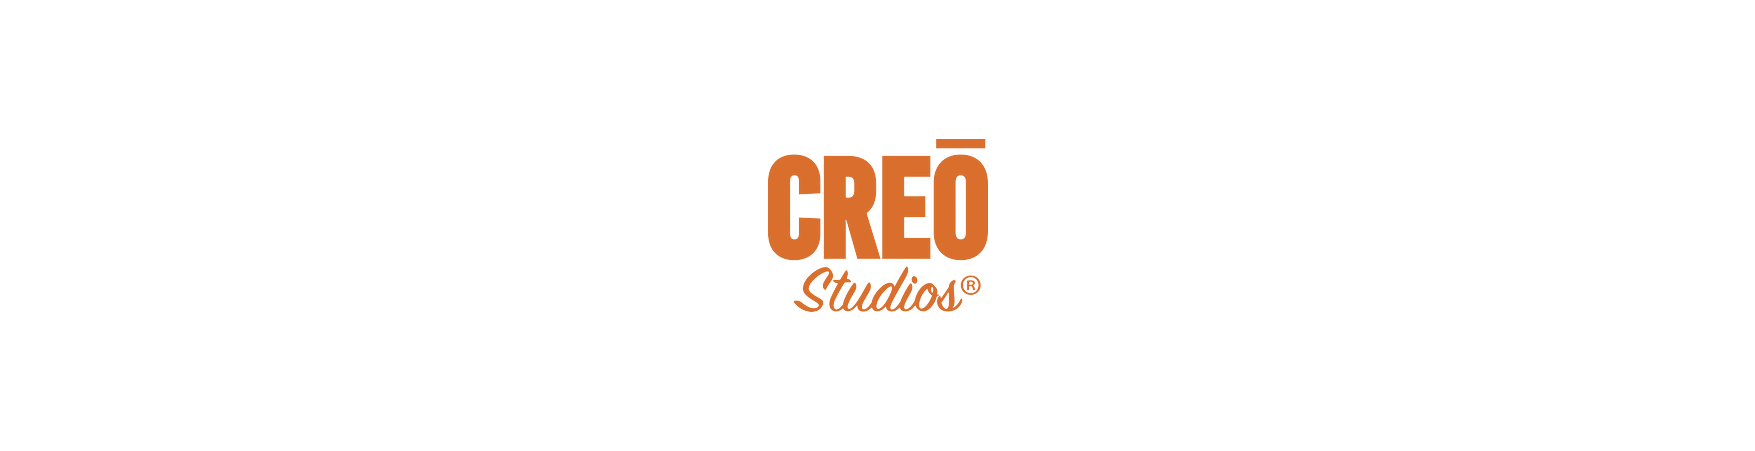 Creo Studios ®